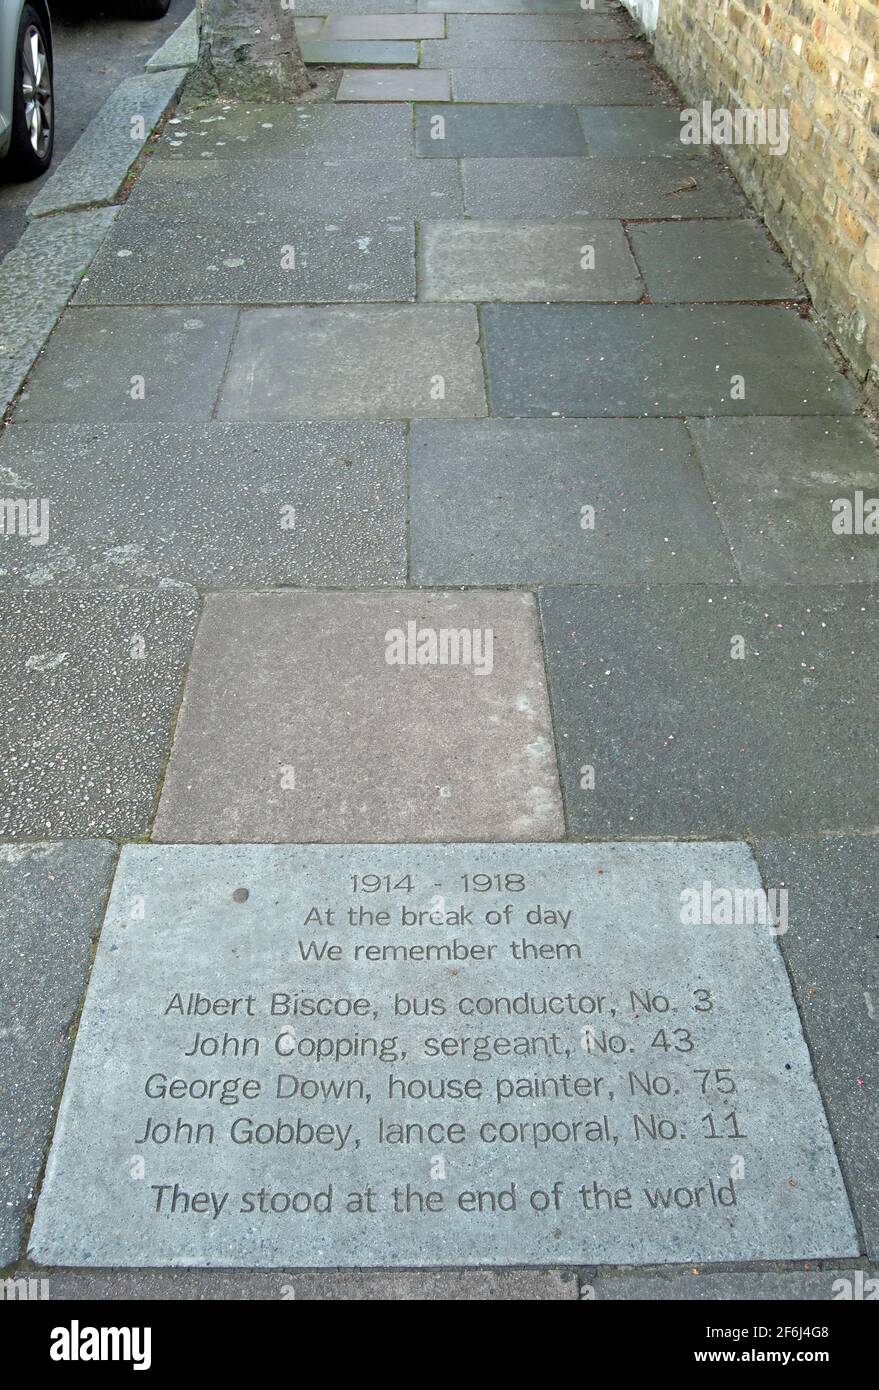 pavimento memorial lista de los que murieron en el servicio en la guerra mundial uno de esta calle, festing road, putney, suroeste de londres, inglaterra Foto de stock